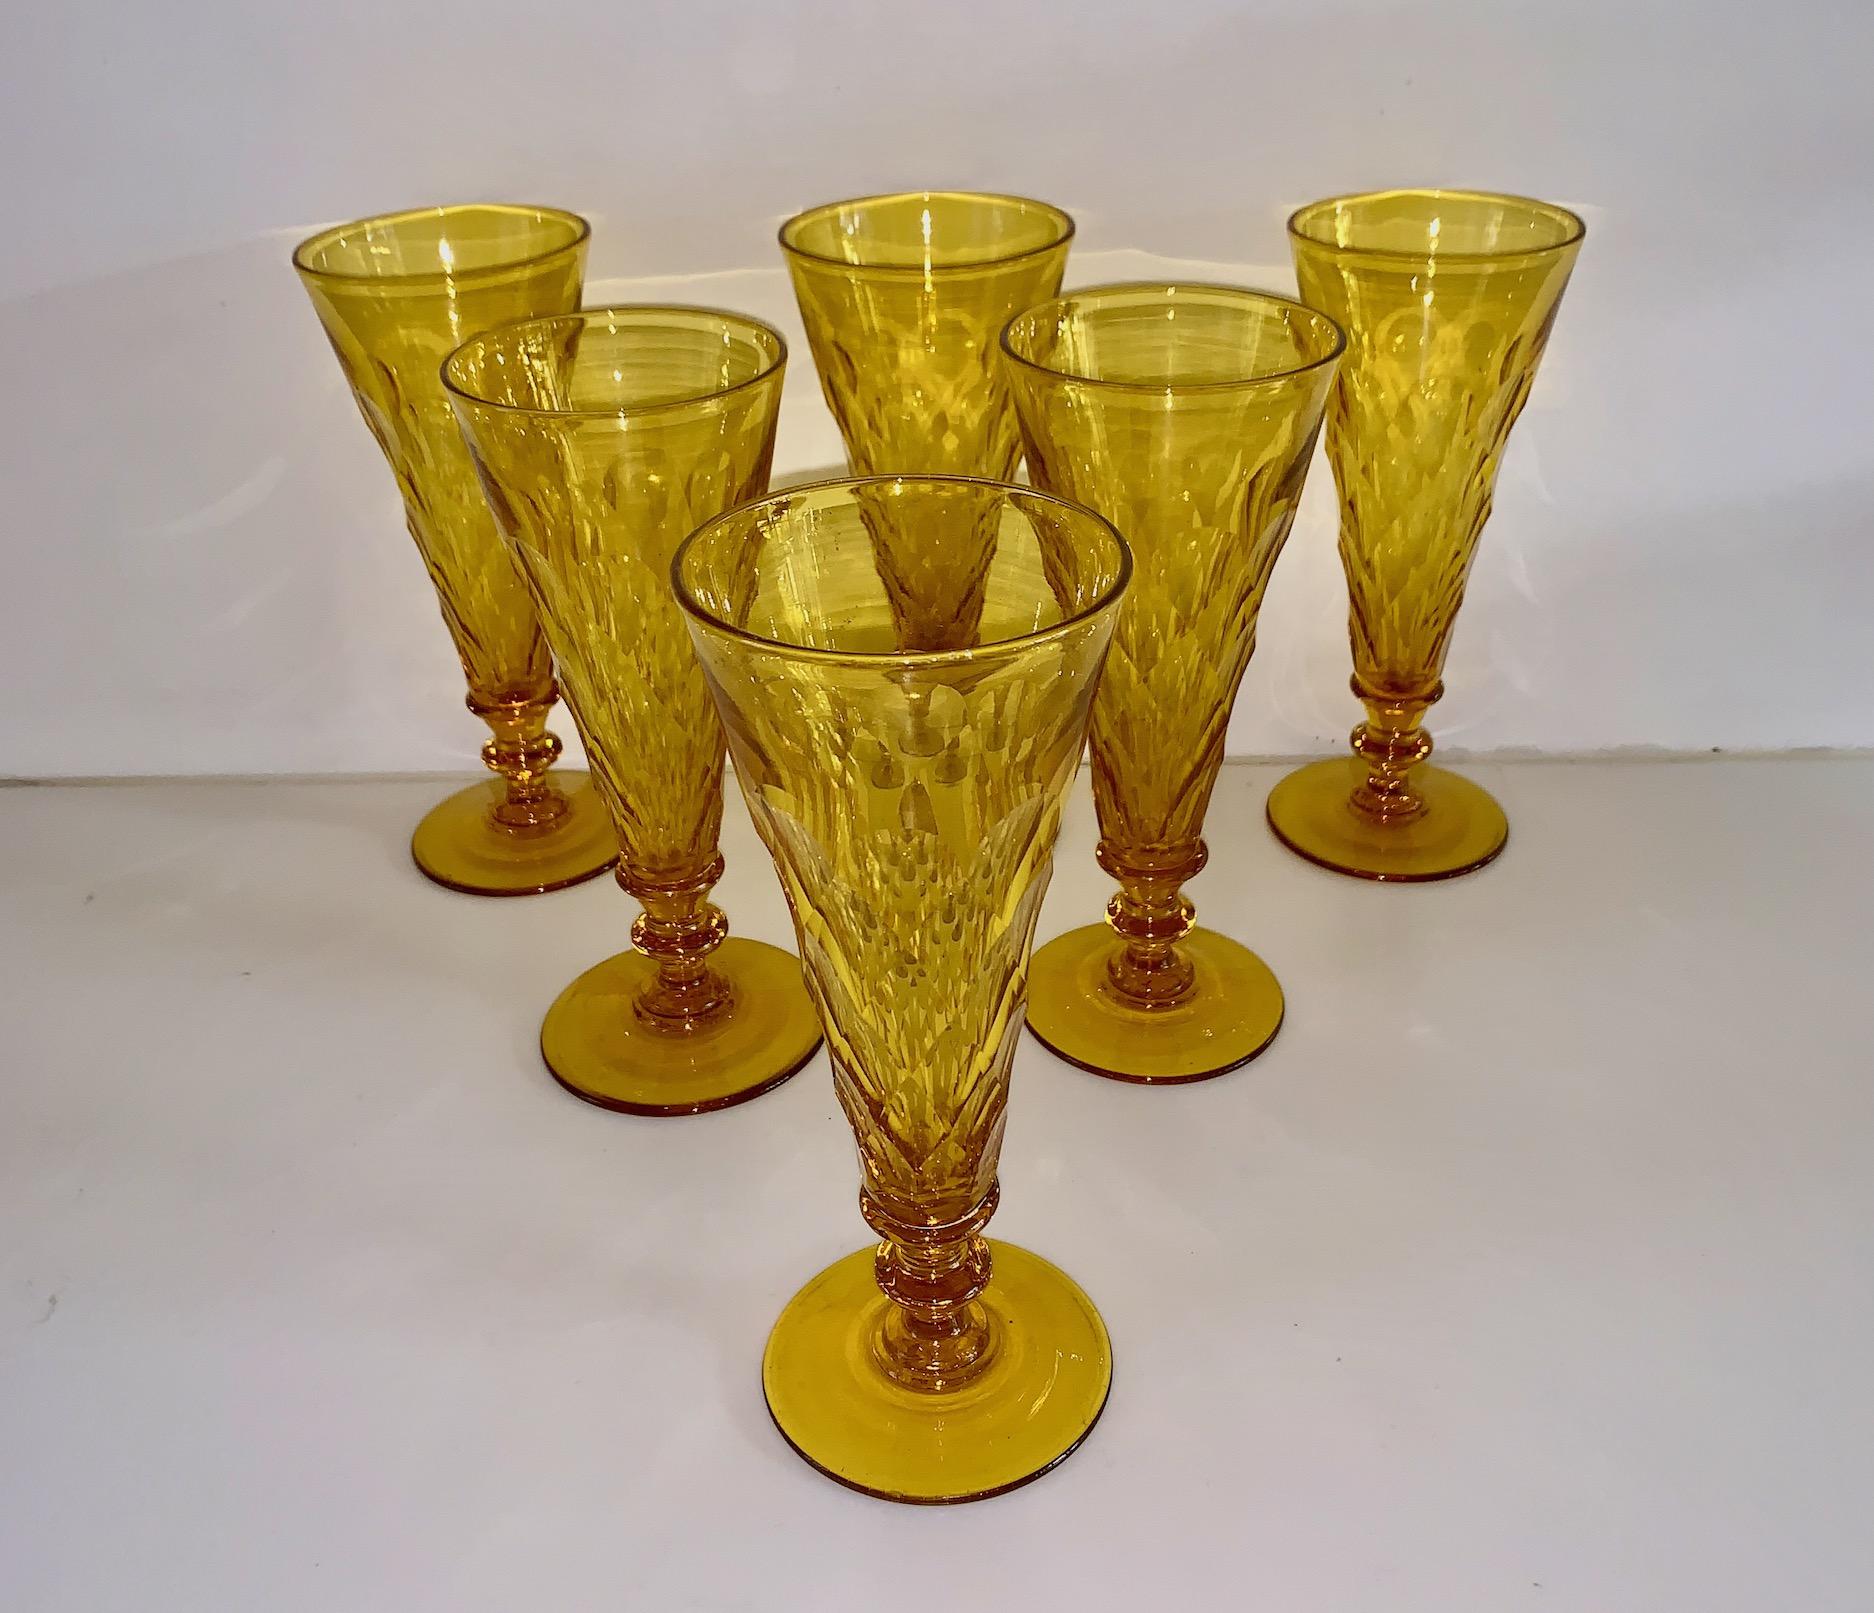 Il s'agit d'un rare et magnifique ensemble de six flûtes à champagne d'une couleur jaune canari, attribuées à la Steuben Glass Company.Steuben Glass a été créée en Angleterre au début du C.C. et quelques années plus tard, elle a été rachetée par la